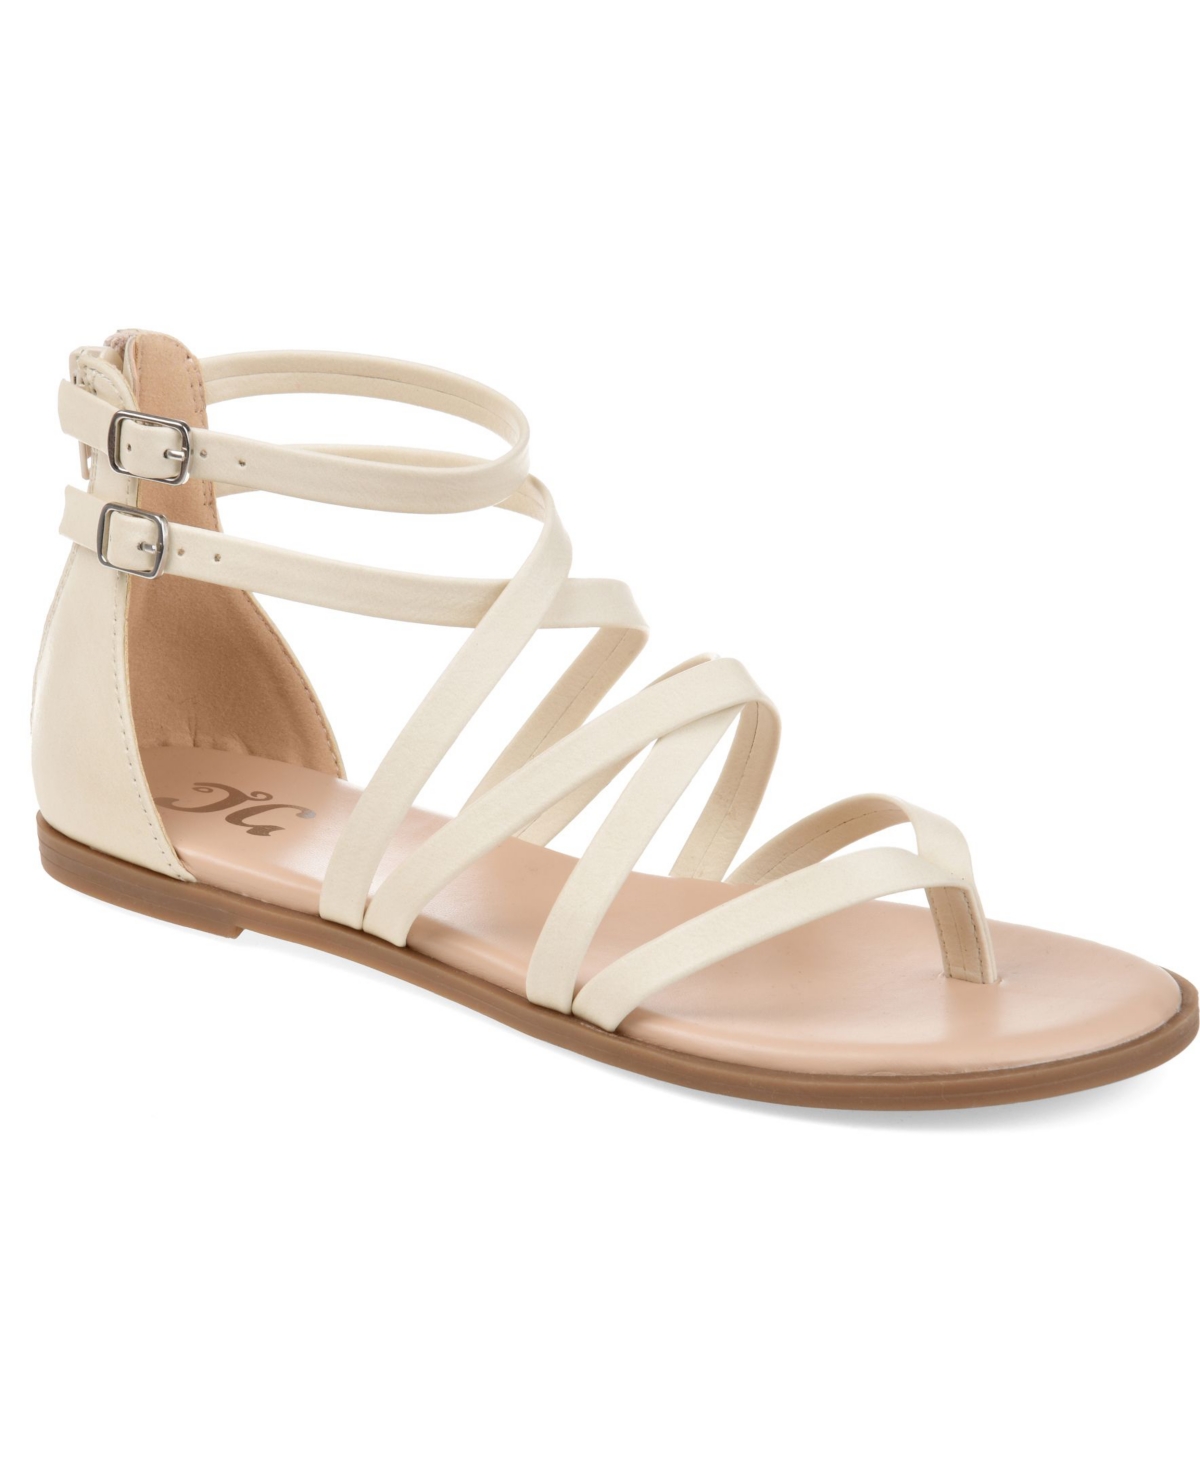 Women's Zailie Strappy Gladiator Flat Sandals - Brown